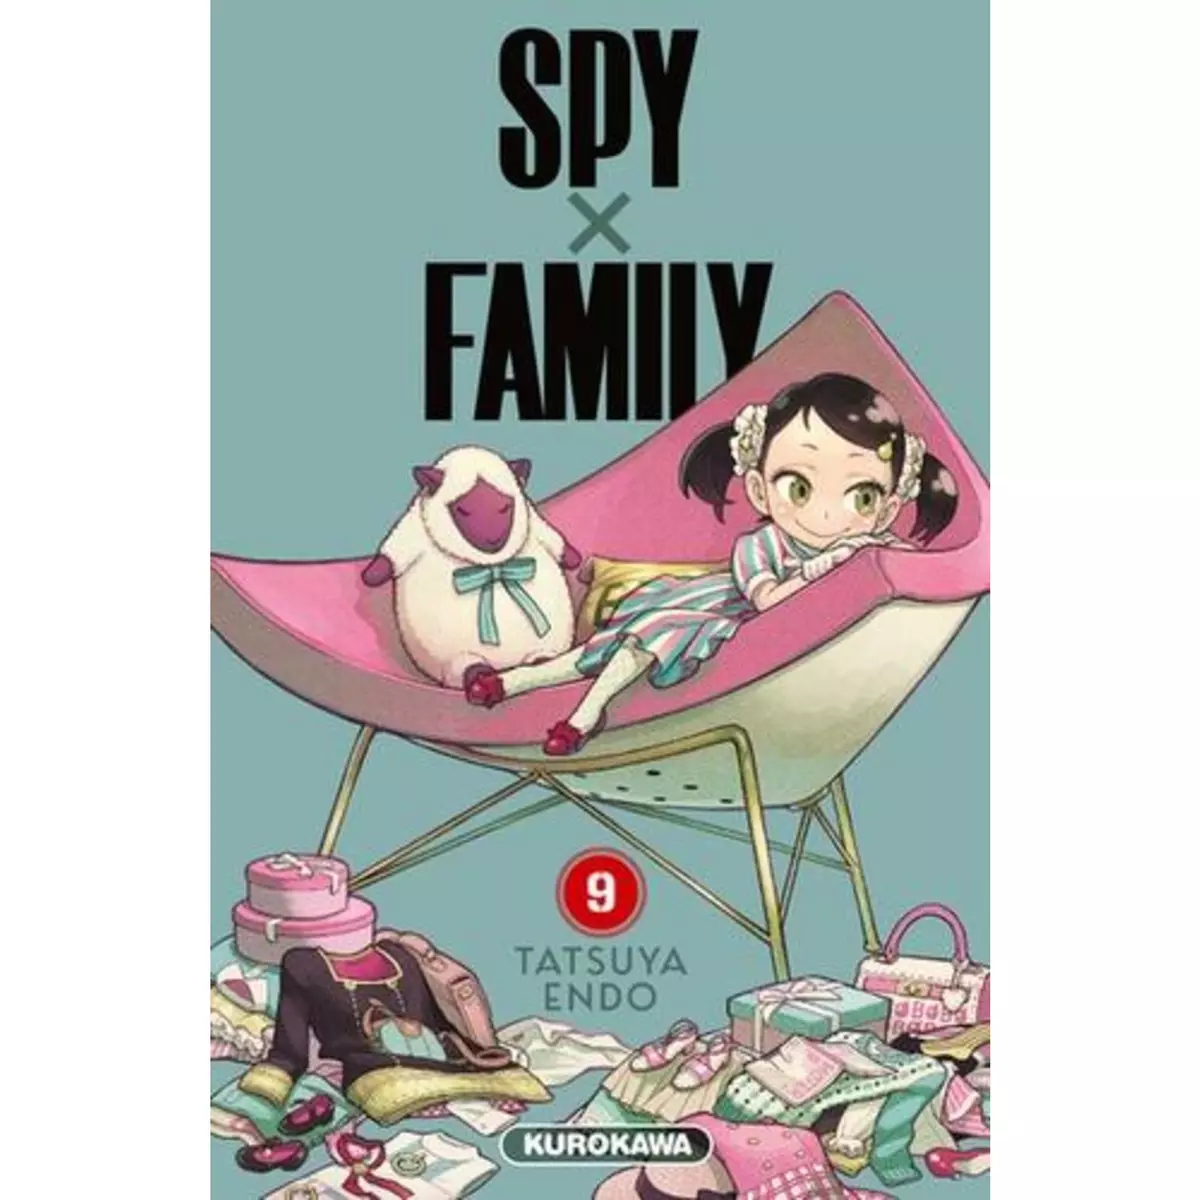  SPY X FAMILY TOME 9 , Endo Tatsuya